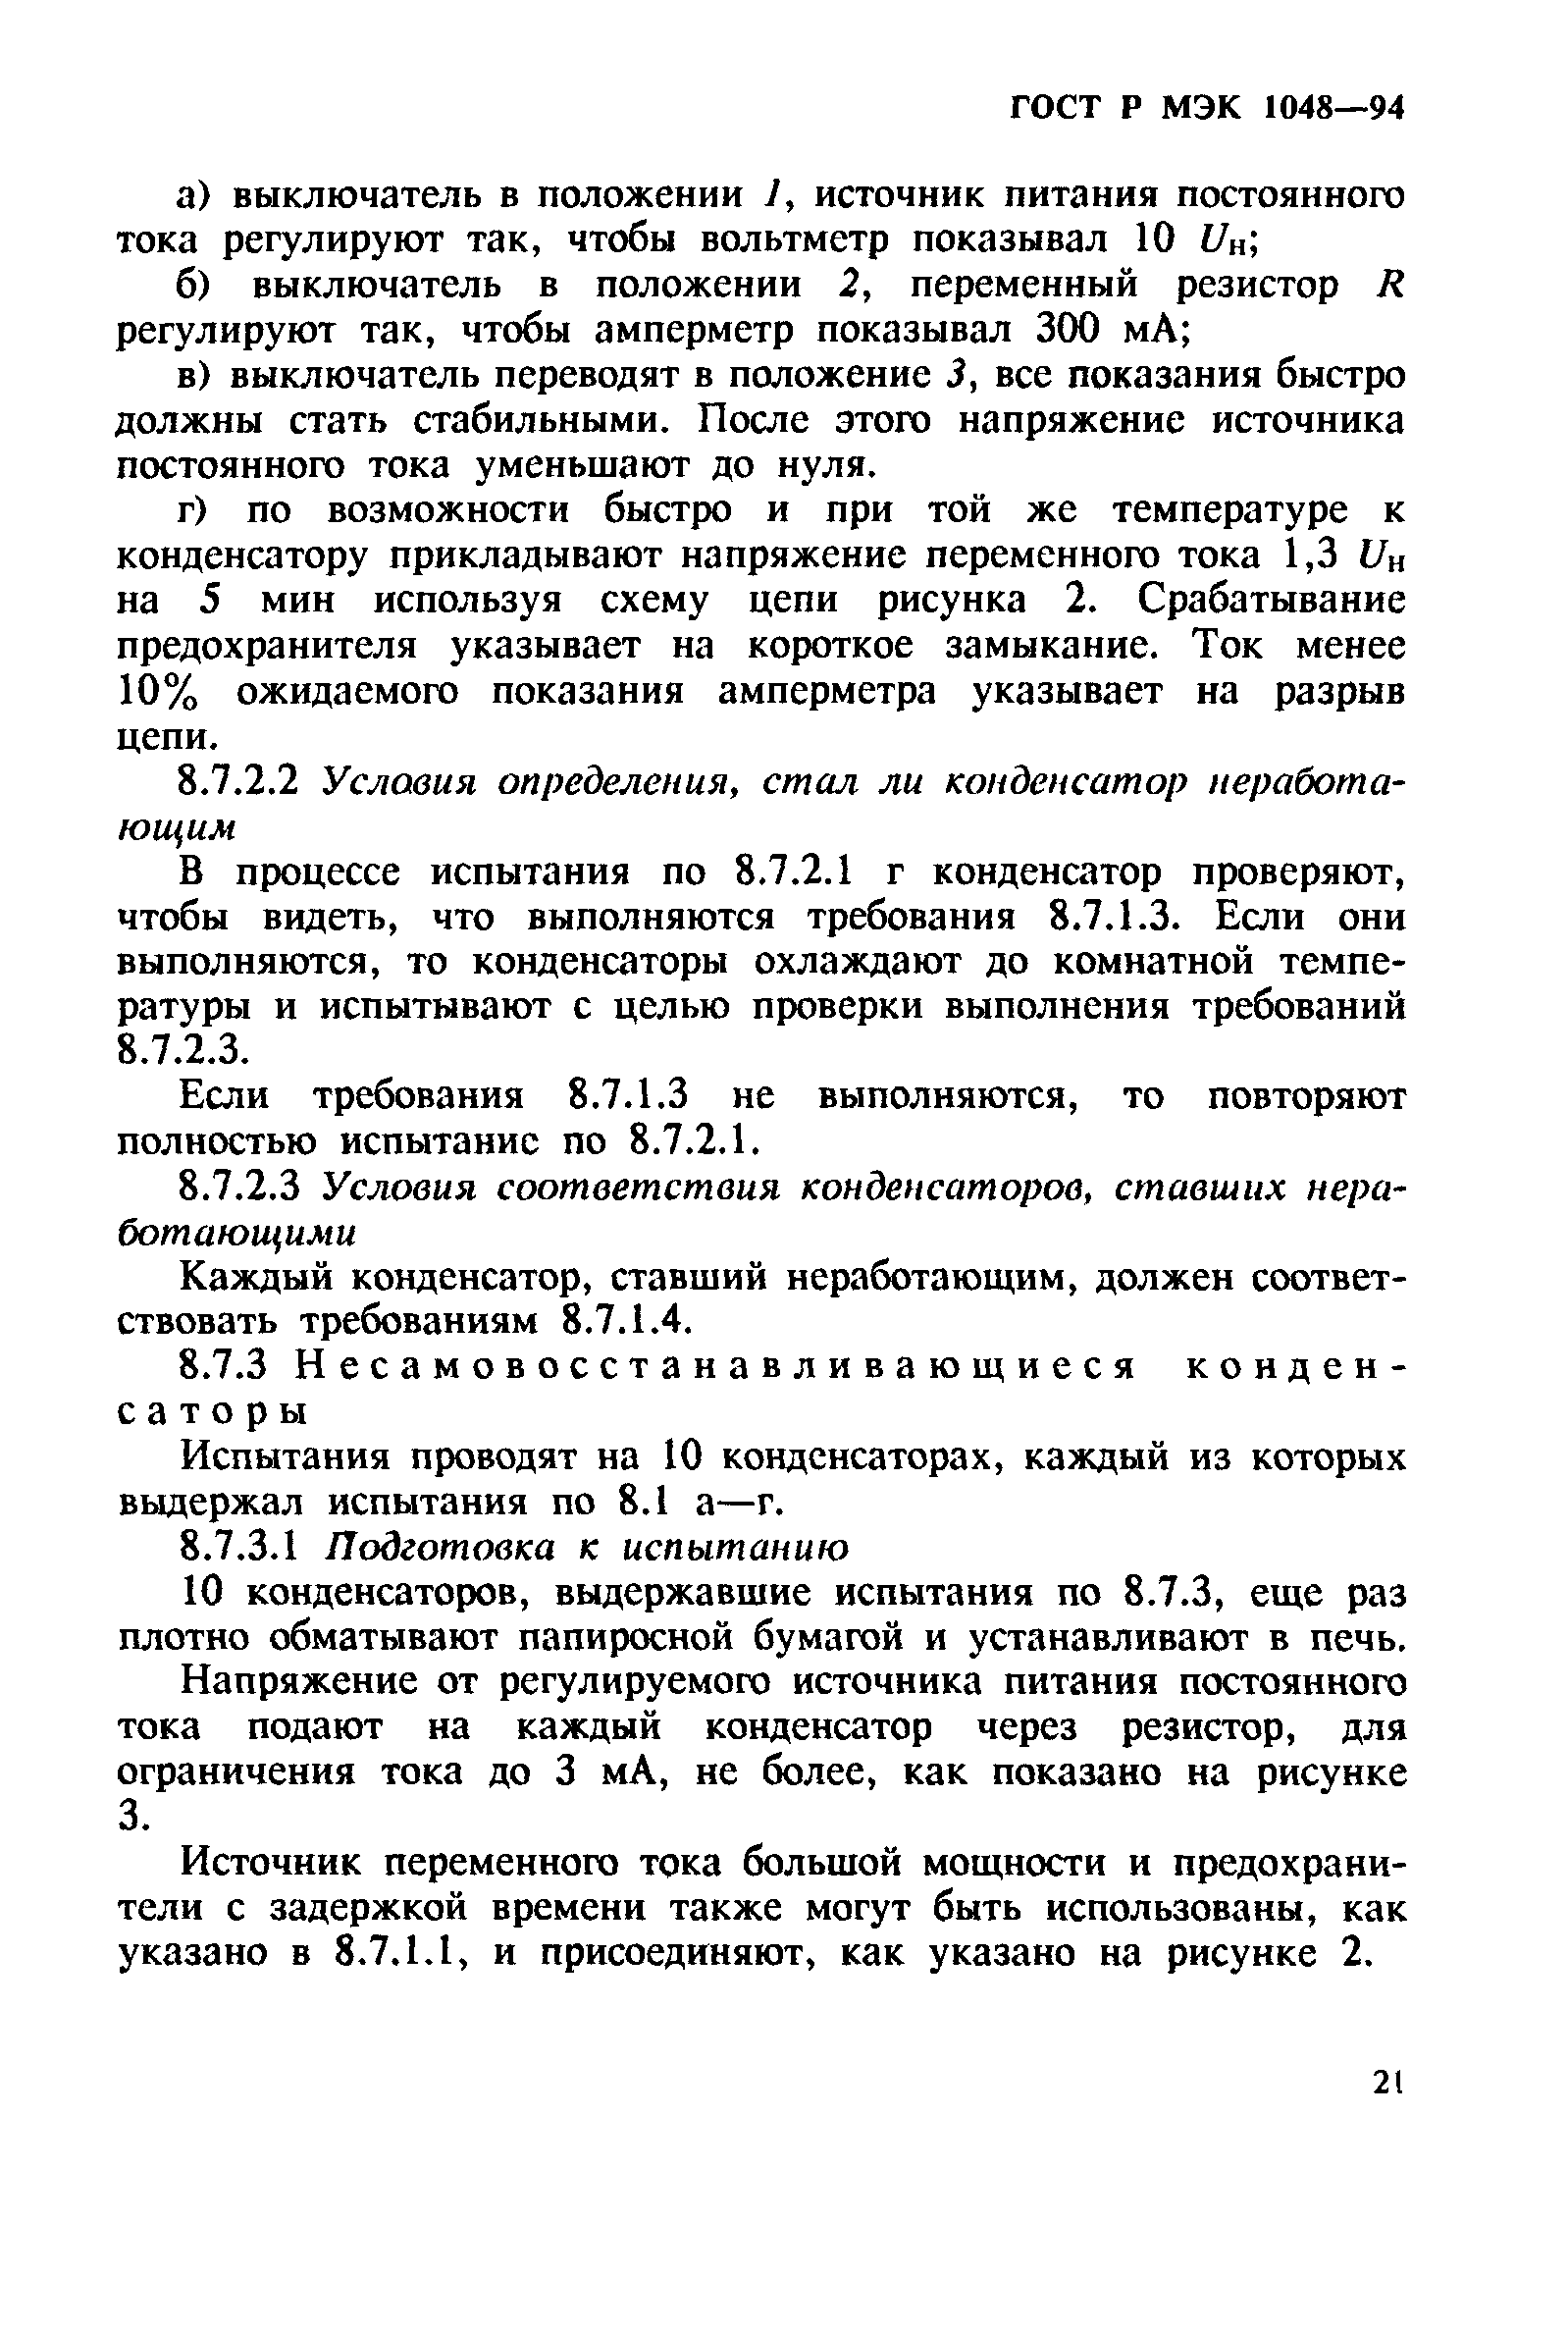 ГОСТ Р МЭК 1048-94